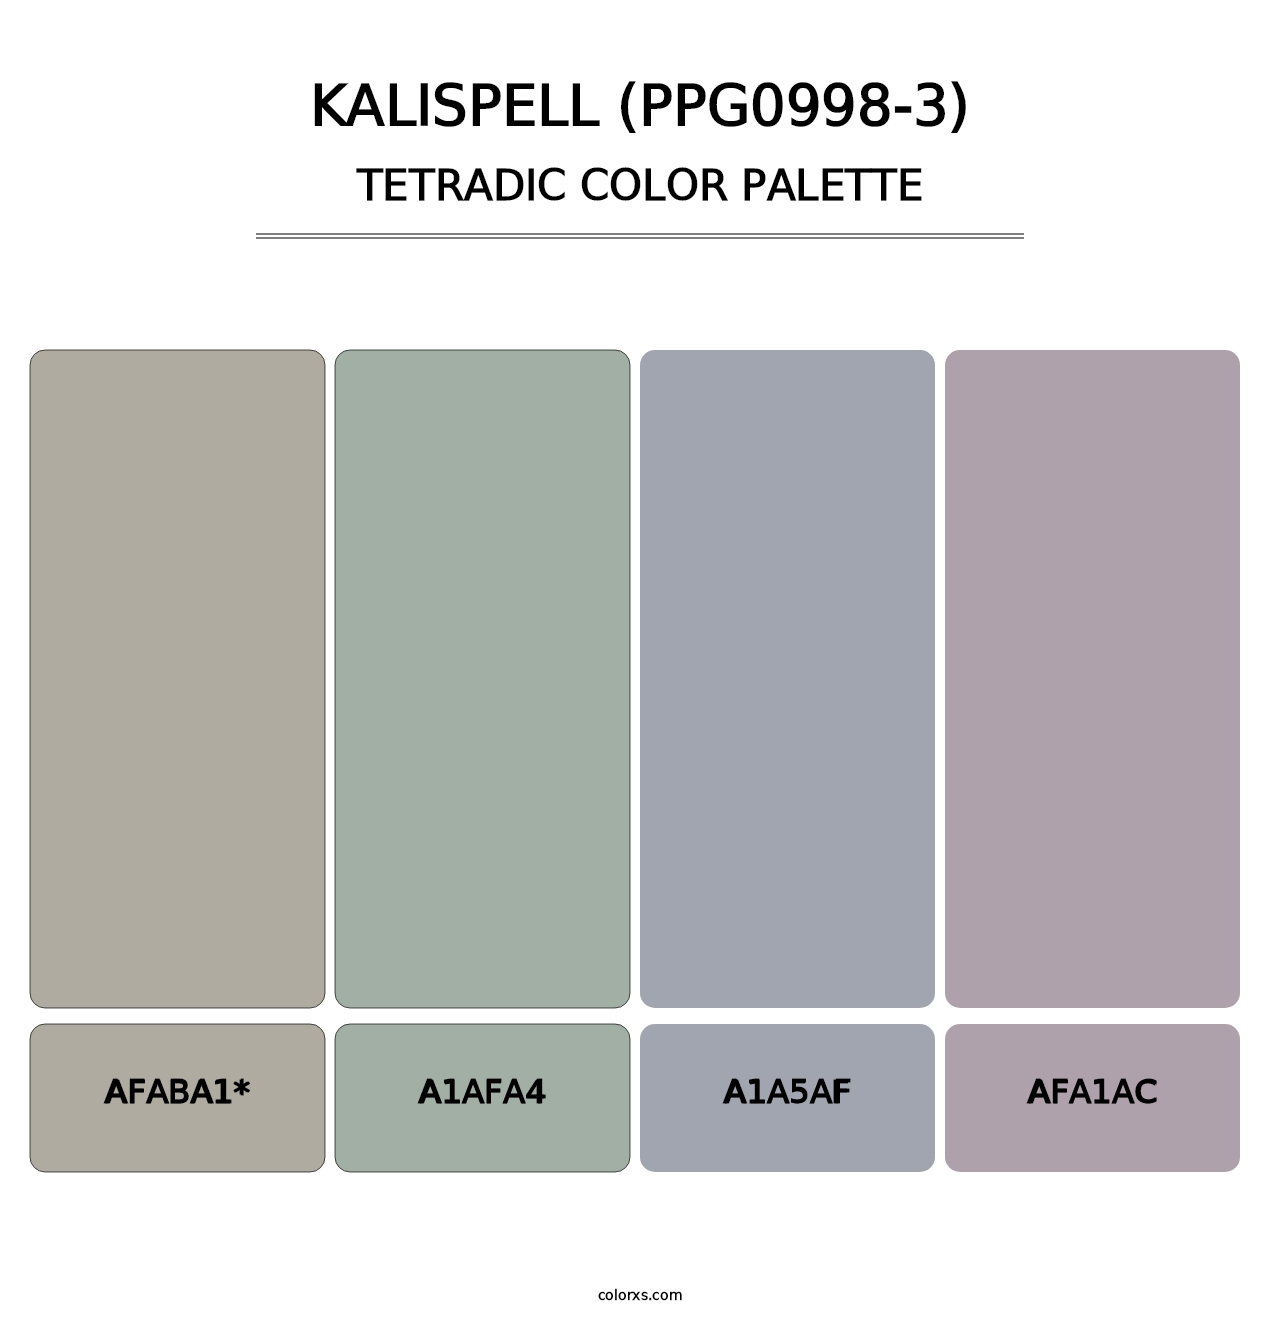 Kalispell (PPG0998-3) - Tetradic Color Palette